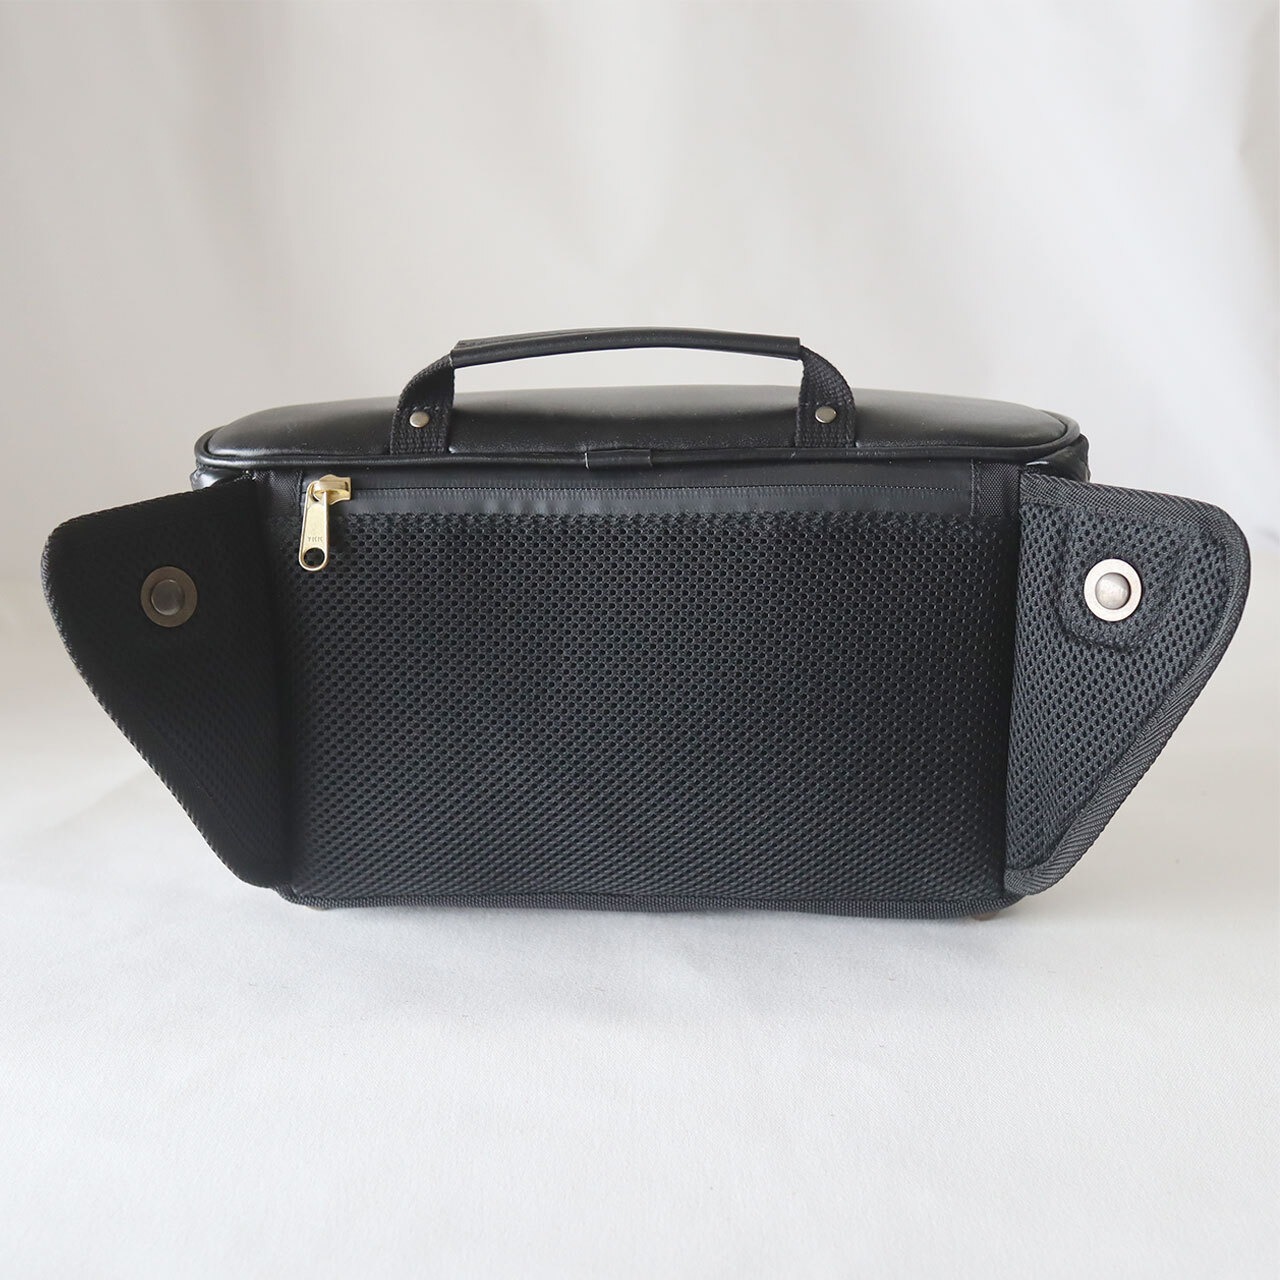 カメラバッグ：araragi camera bag-Leather top (ネイビー×タンプラウンレザー)